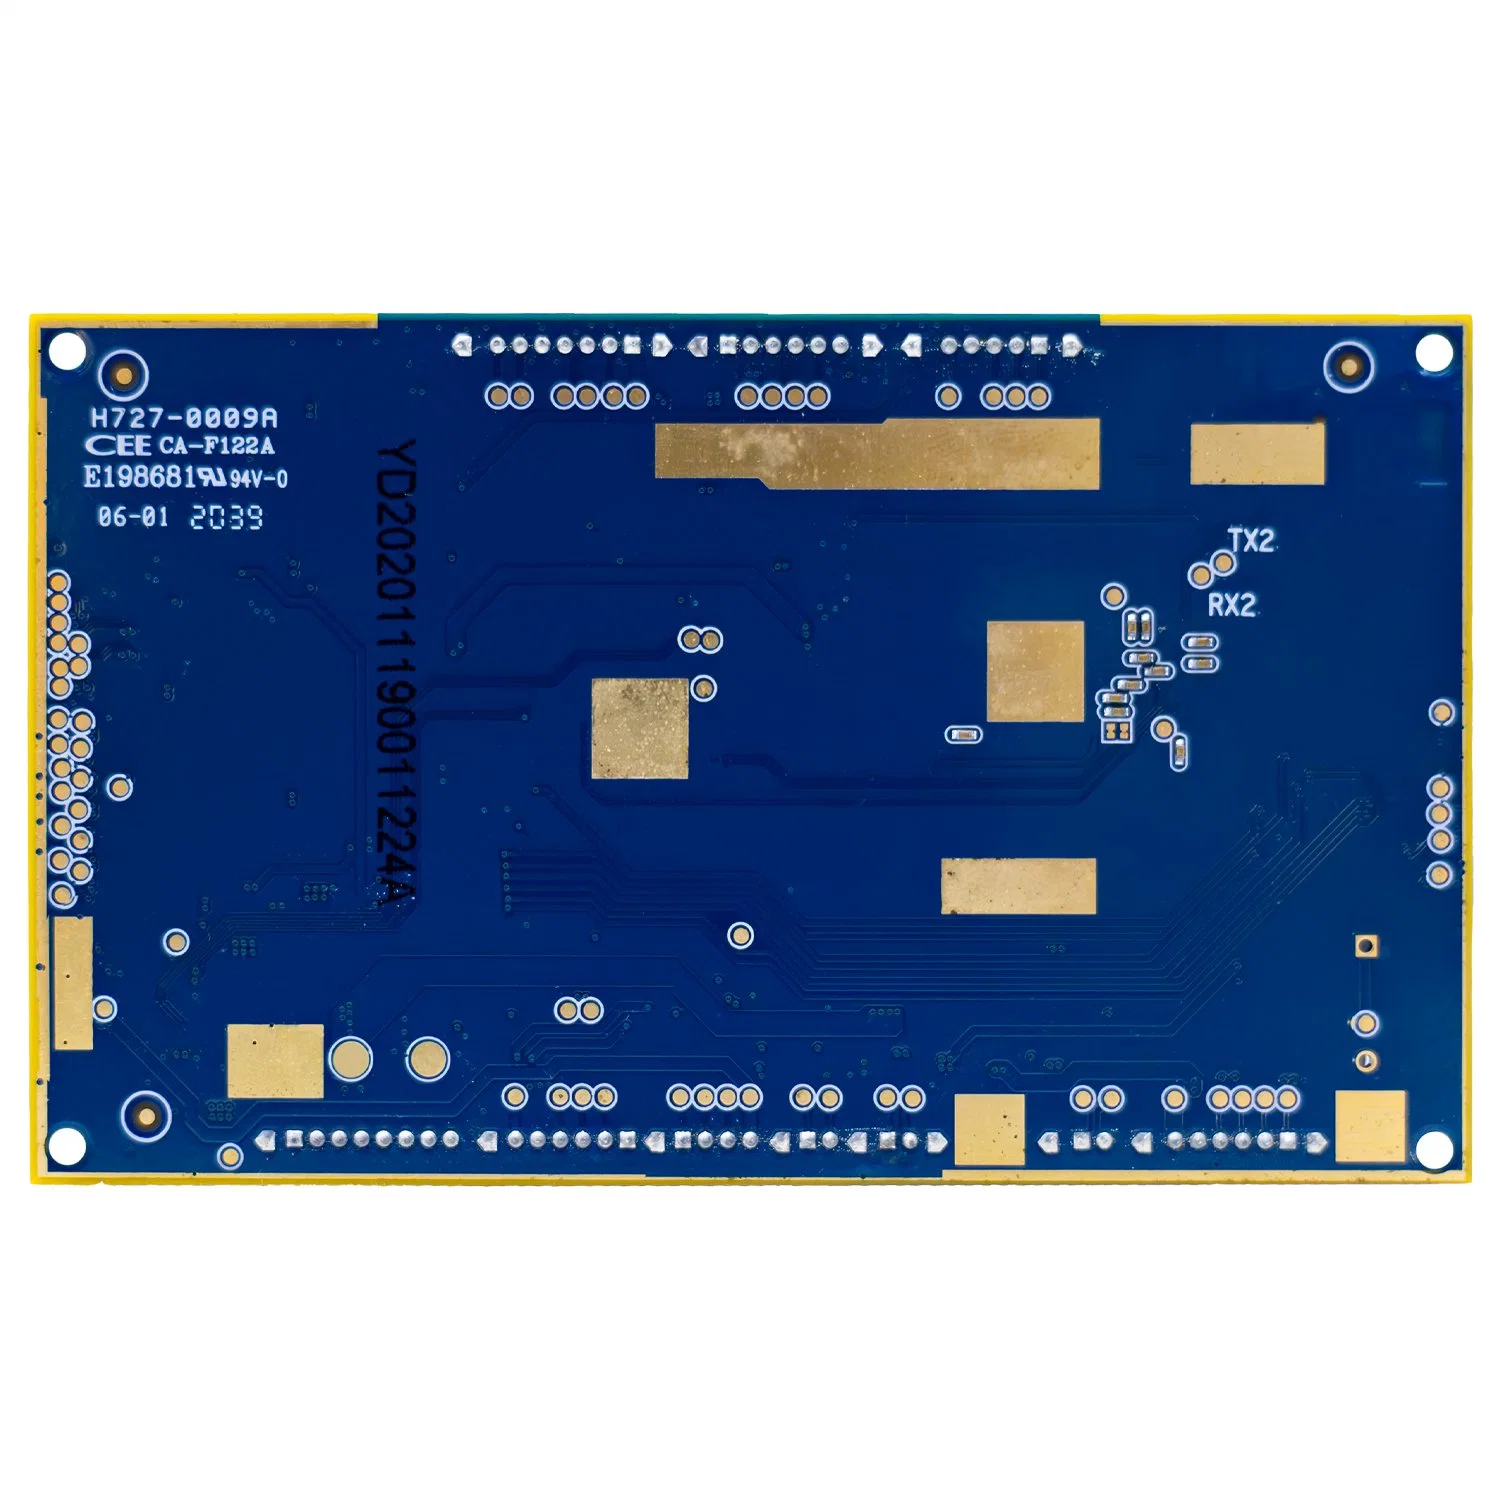 Servicio de parada única para placa base de circuito PCBA integrada Ak37xx de Asahi Kasei Electronics compatible con RTOS WiFi altavoz Bluetooth